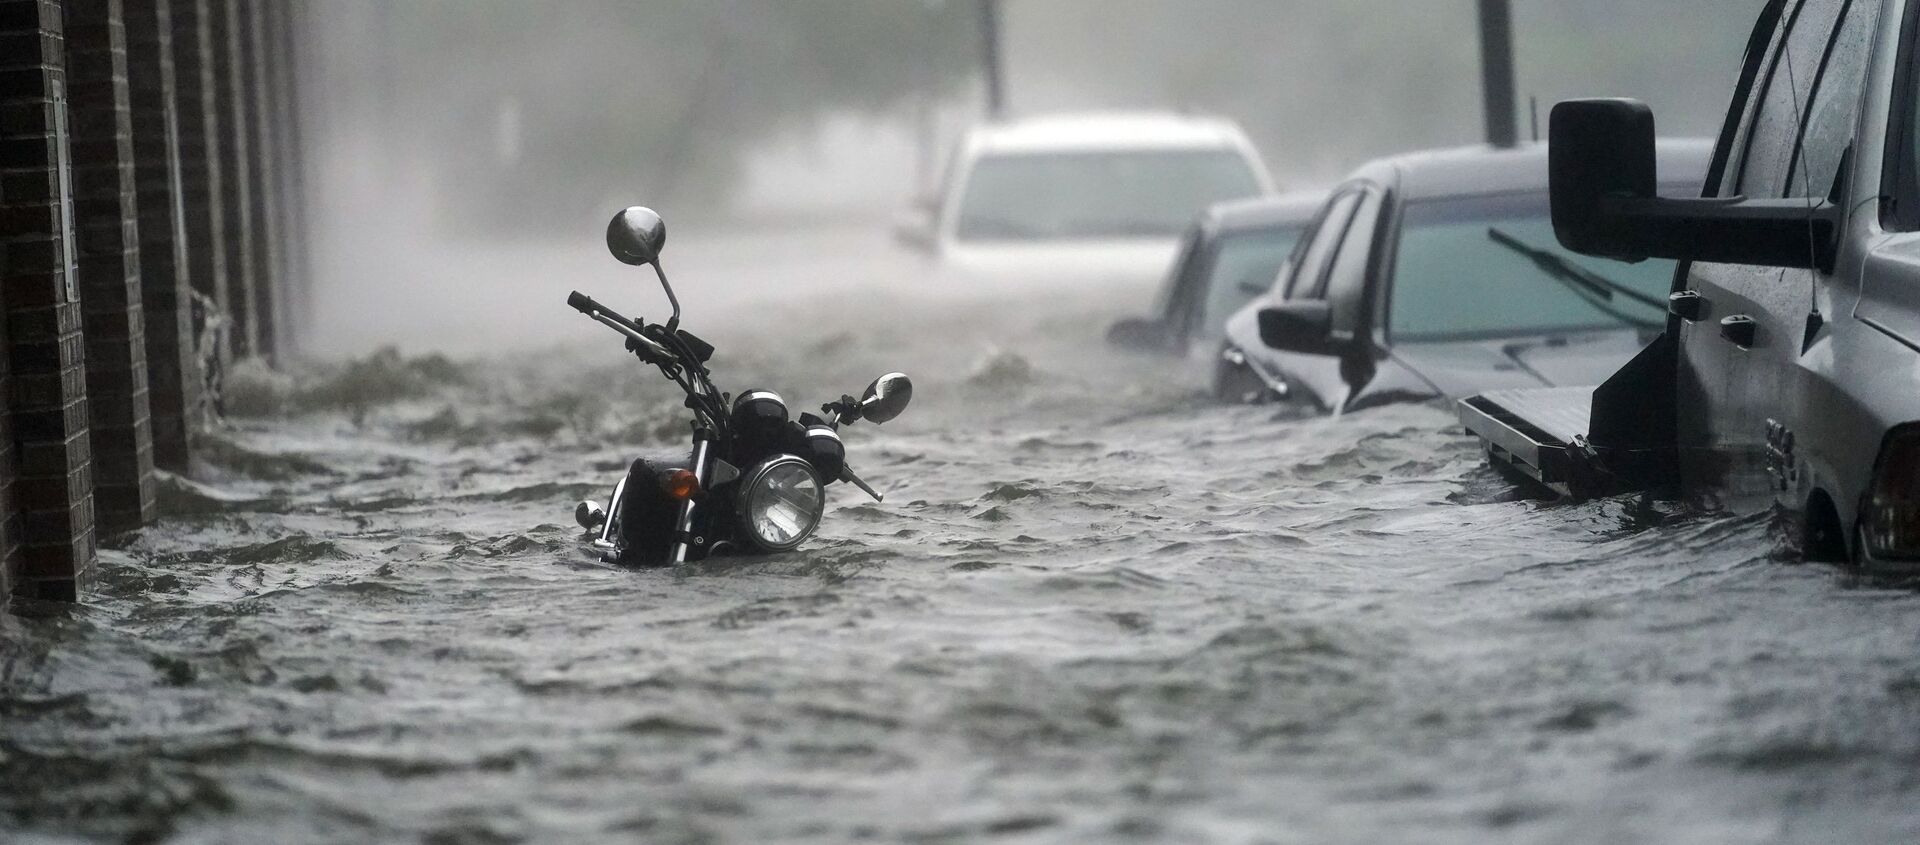 Затопленная улица во время урагана Салли (16 сентября 2020). Пенсакола, Флорида - Sputnik Армения, 1920, 19.10.2020